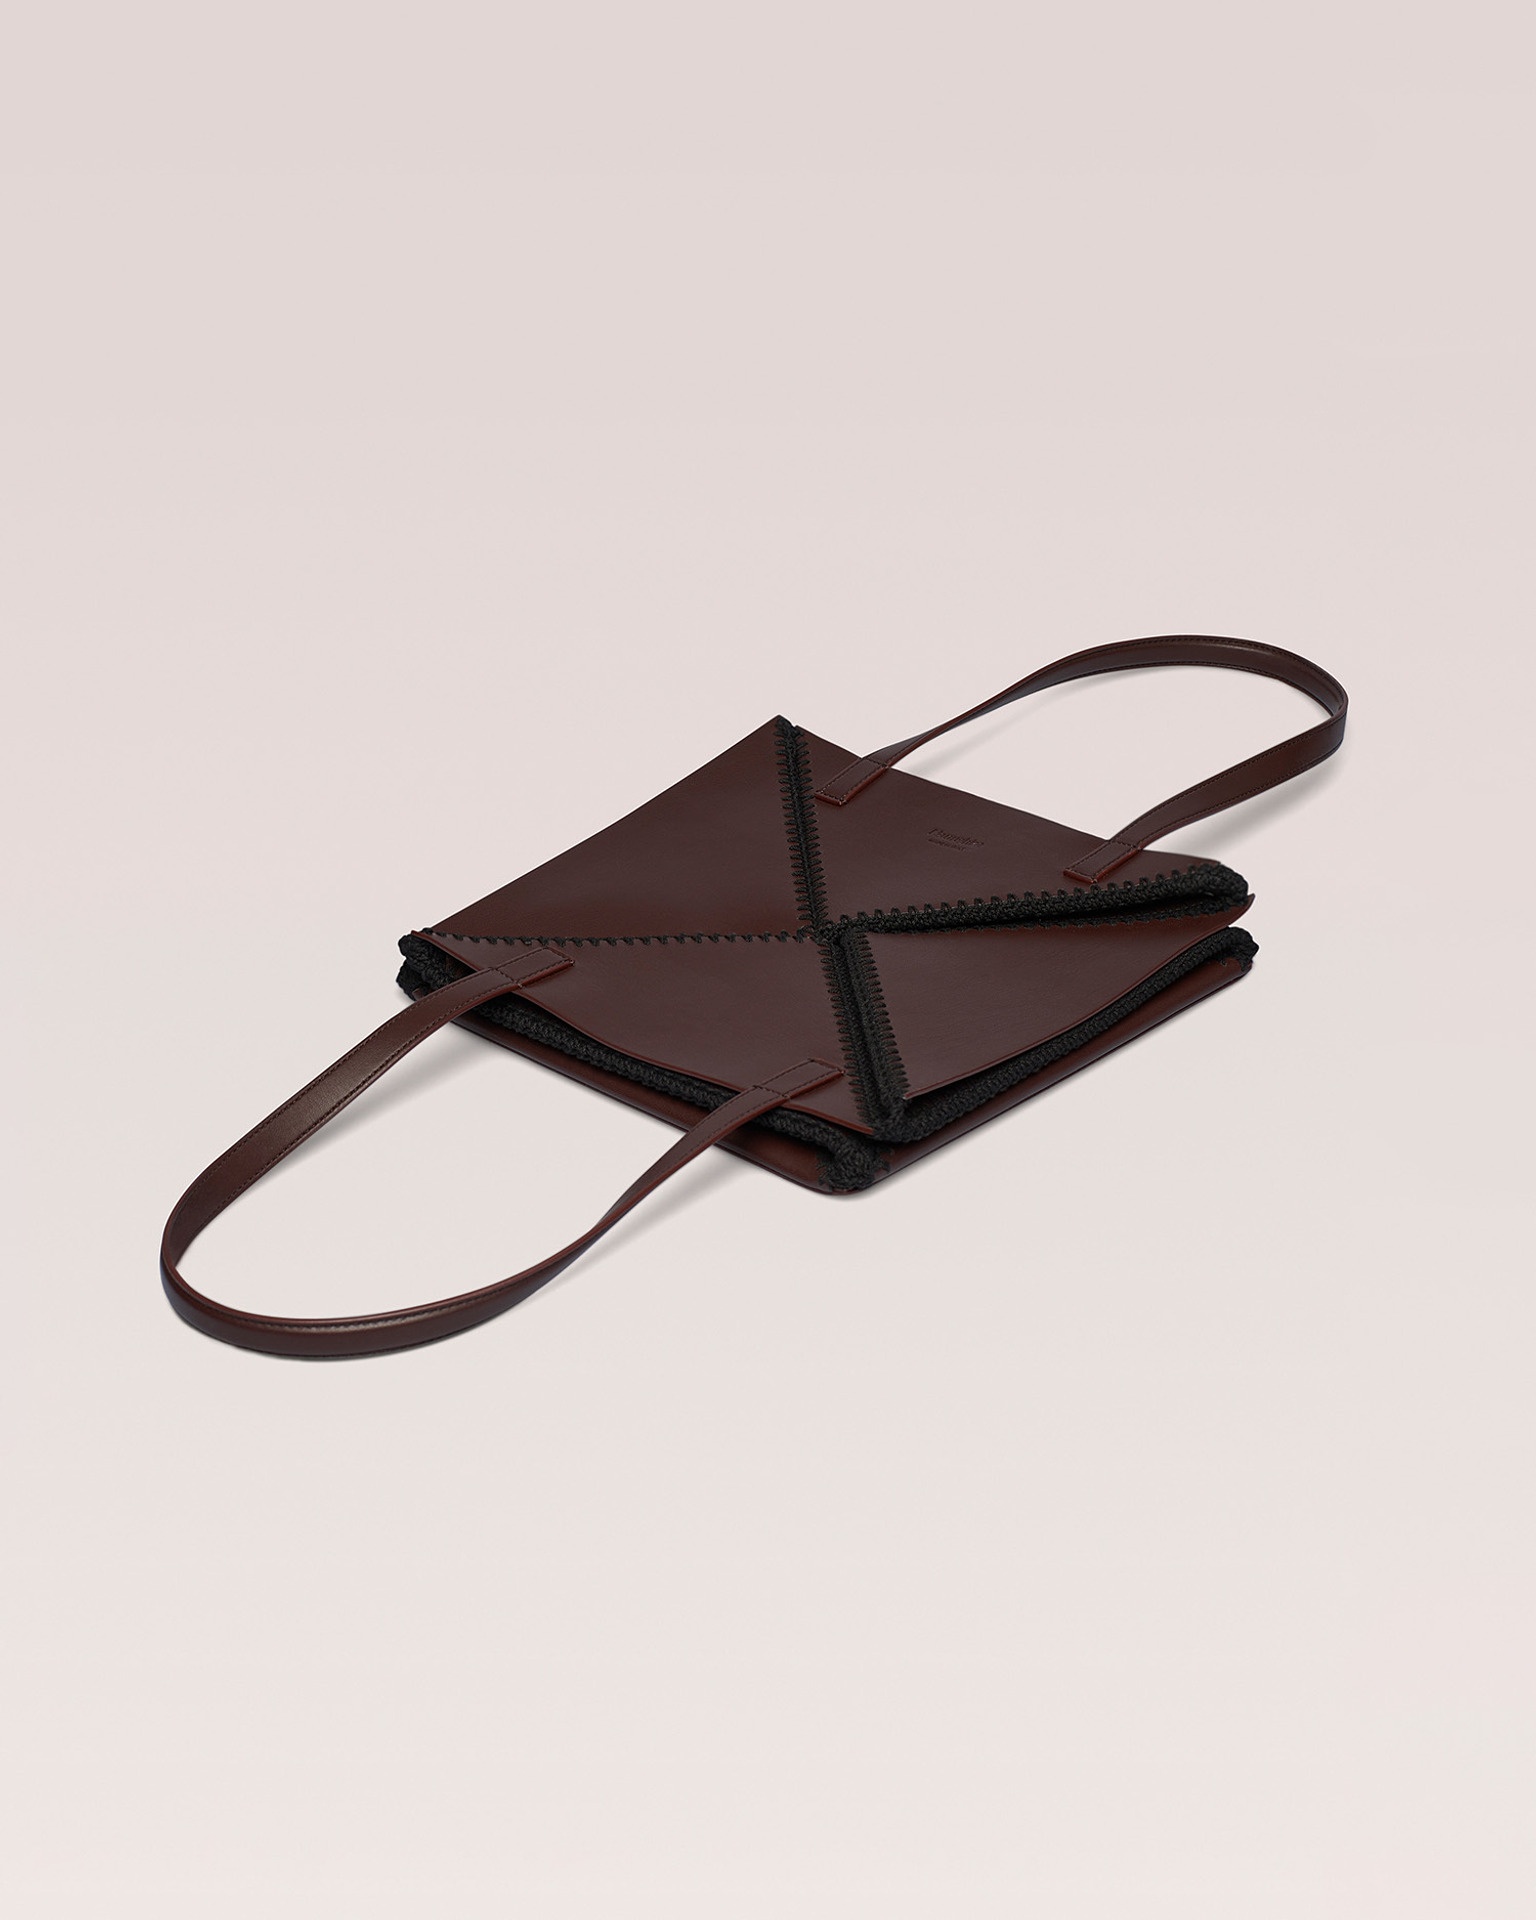 THE ORIGAMI TOTE - Tote bag - Dark brown/Black - 2